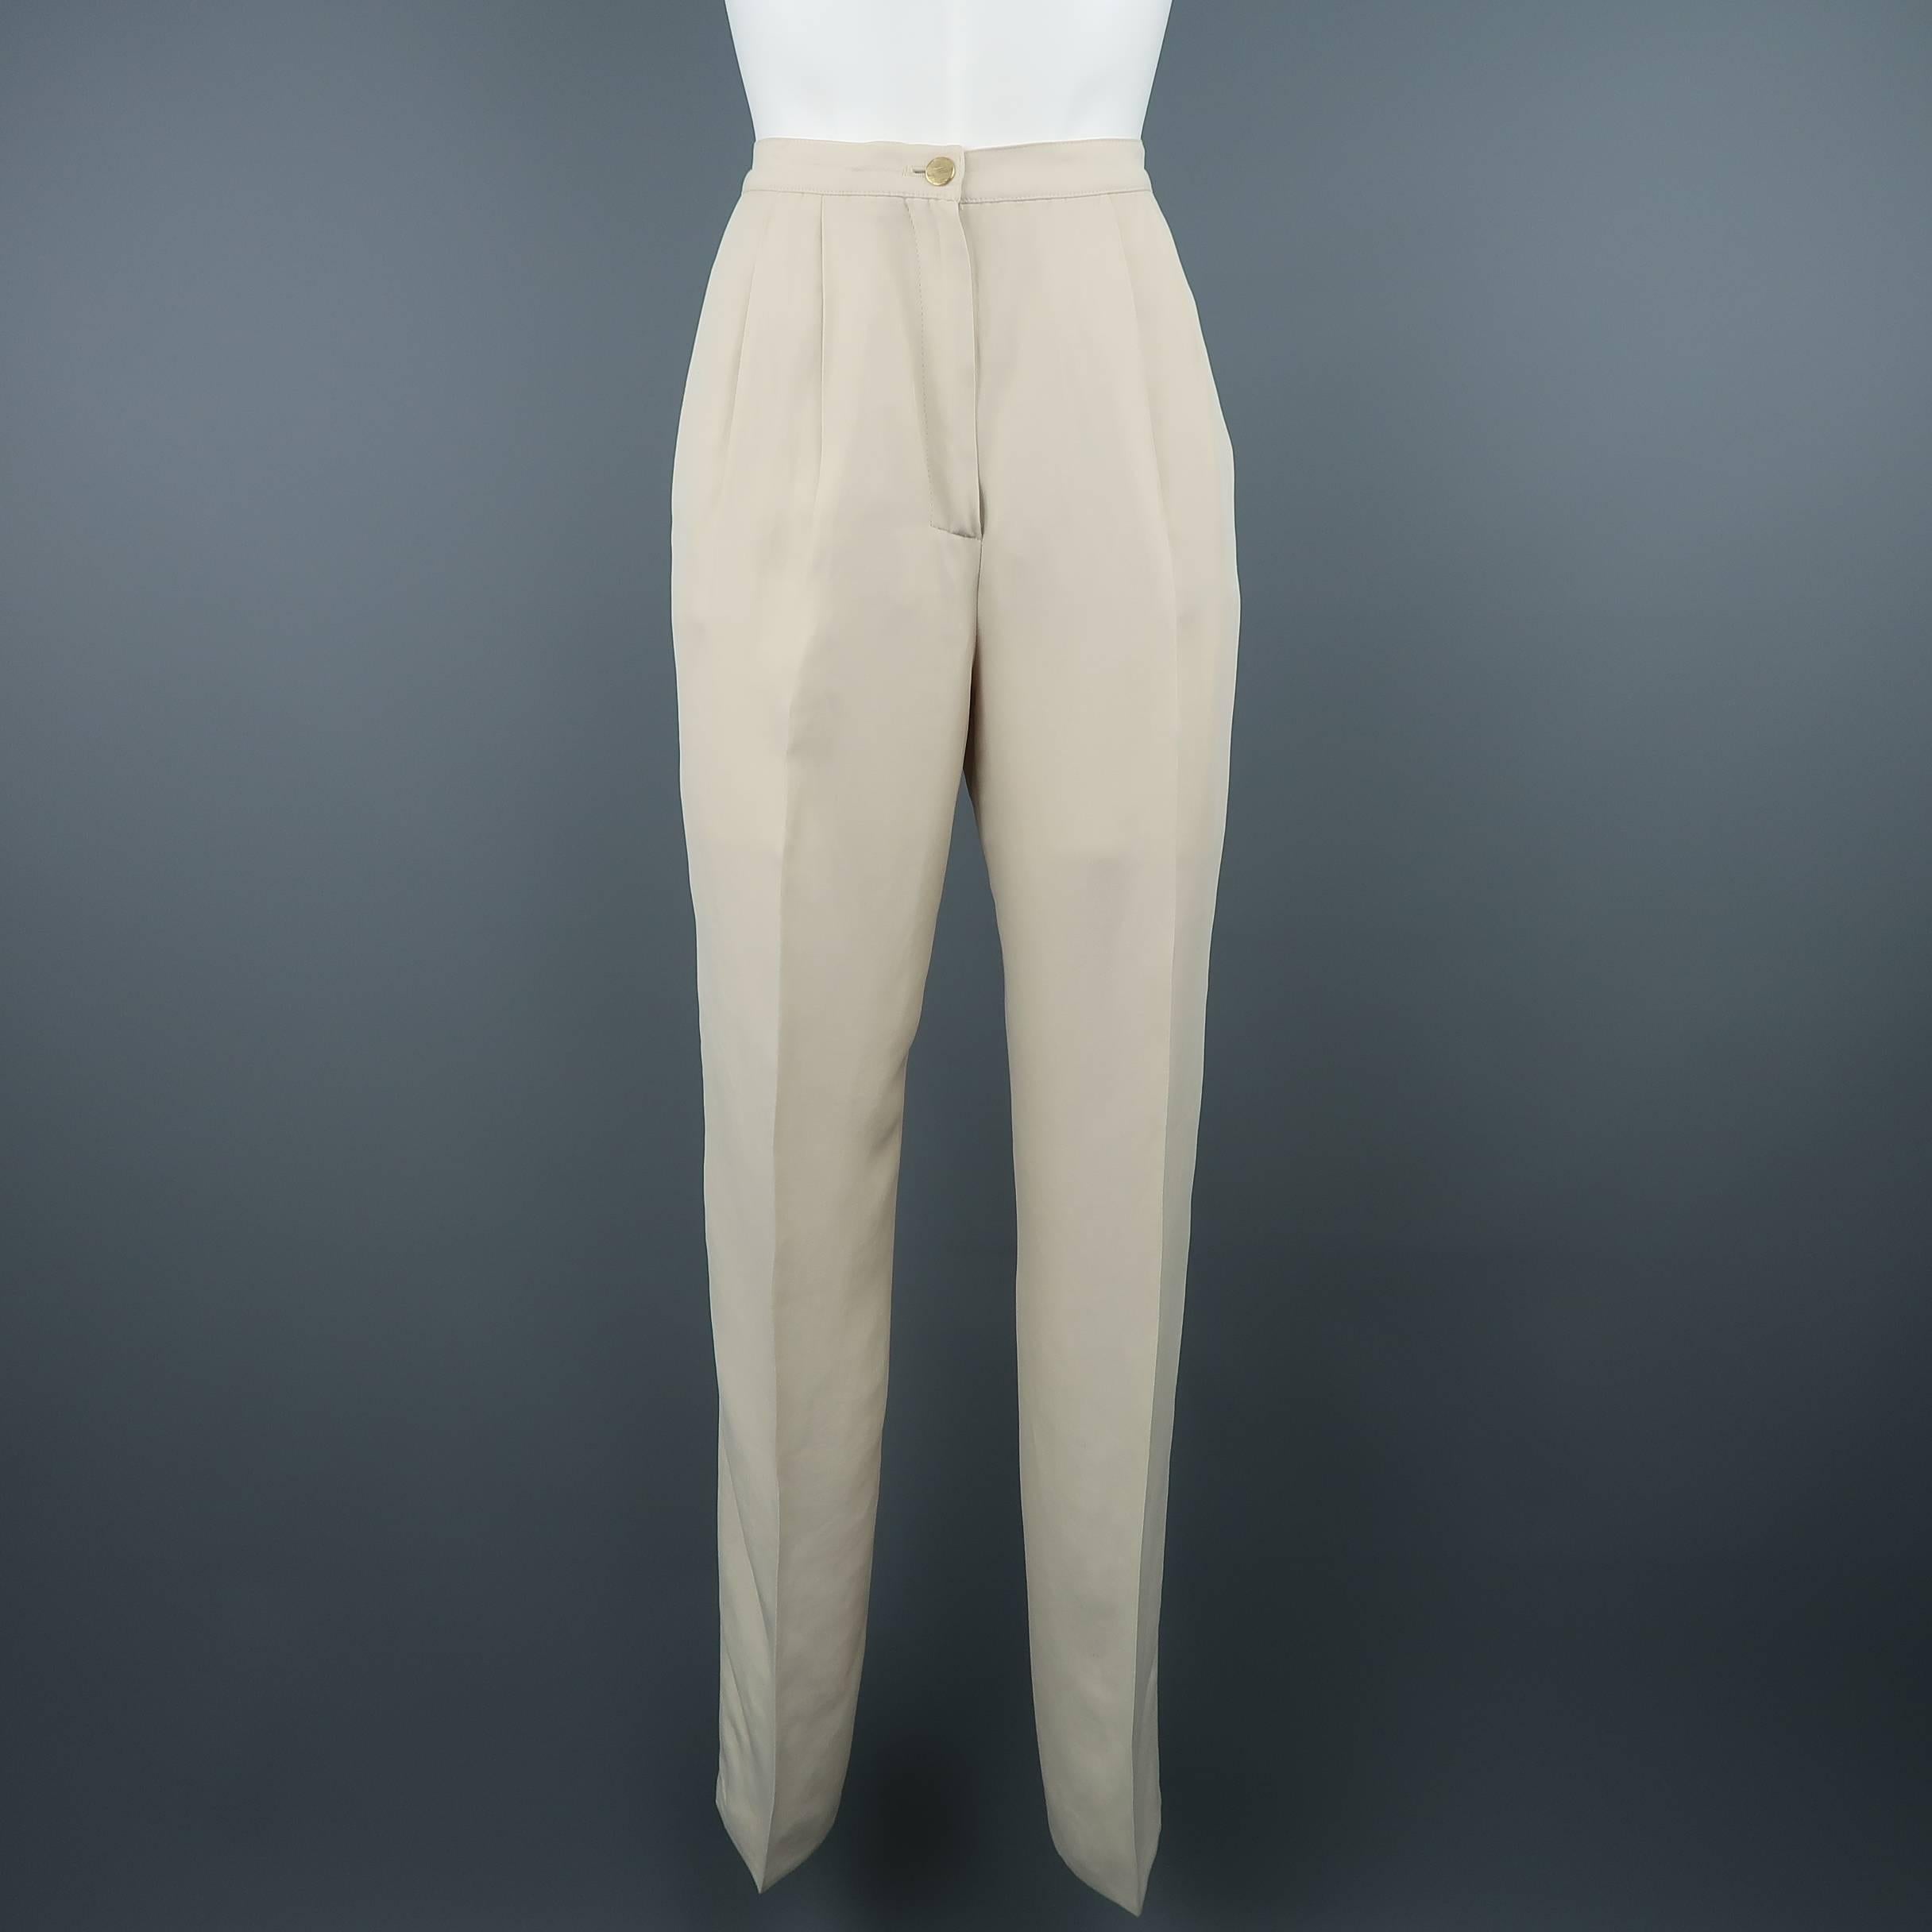 Women's CLAUDE MONTANA Size 8 Beige Peak Lapel Single Button Pant-Suit